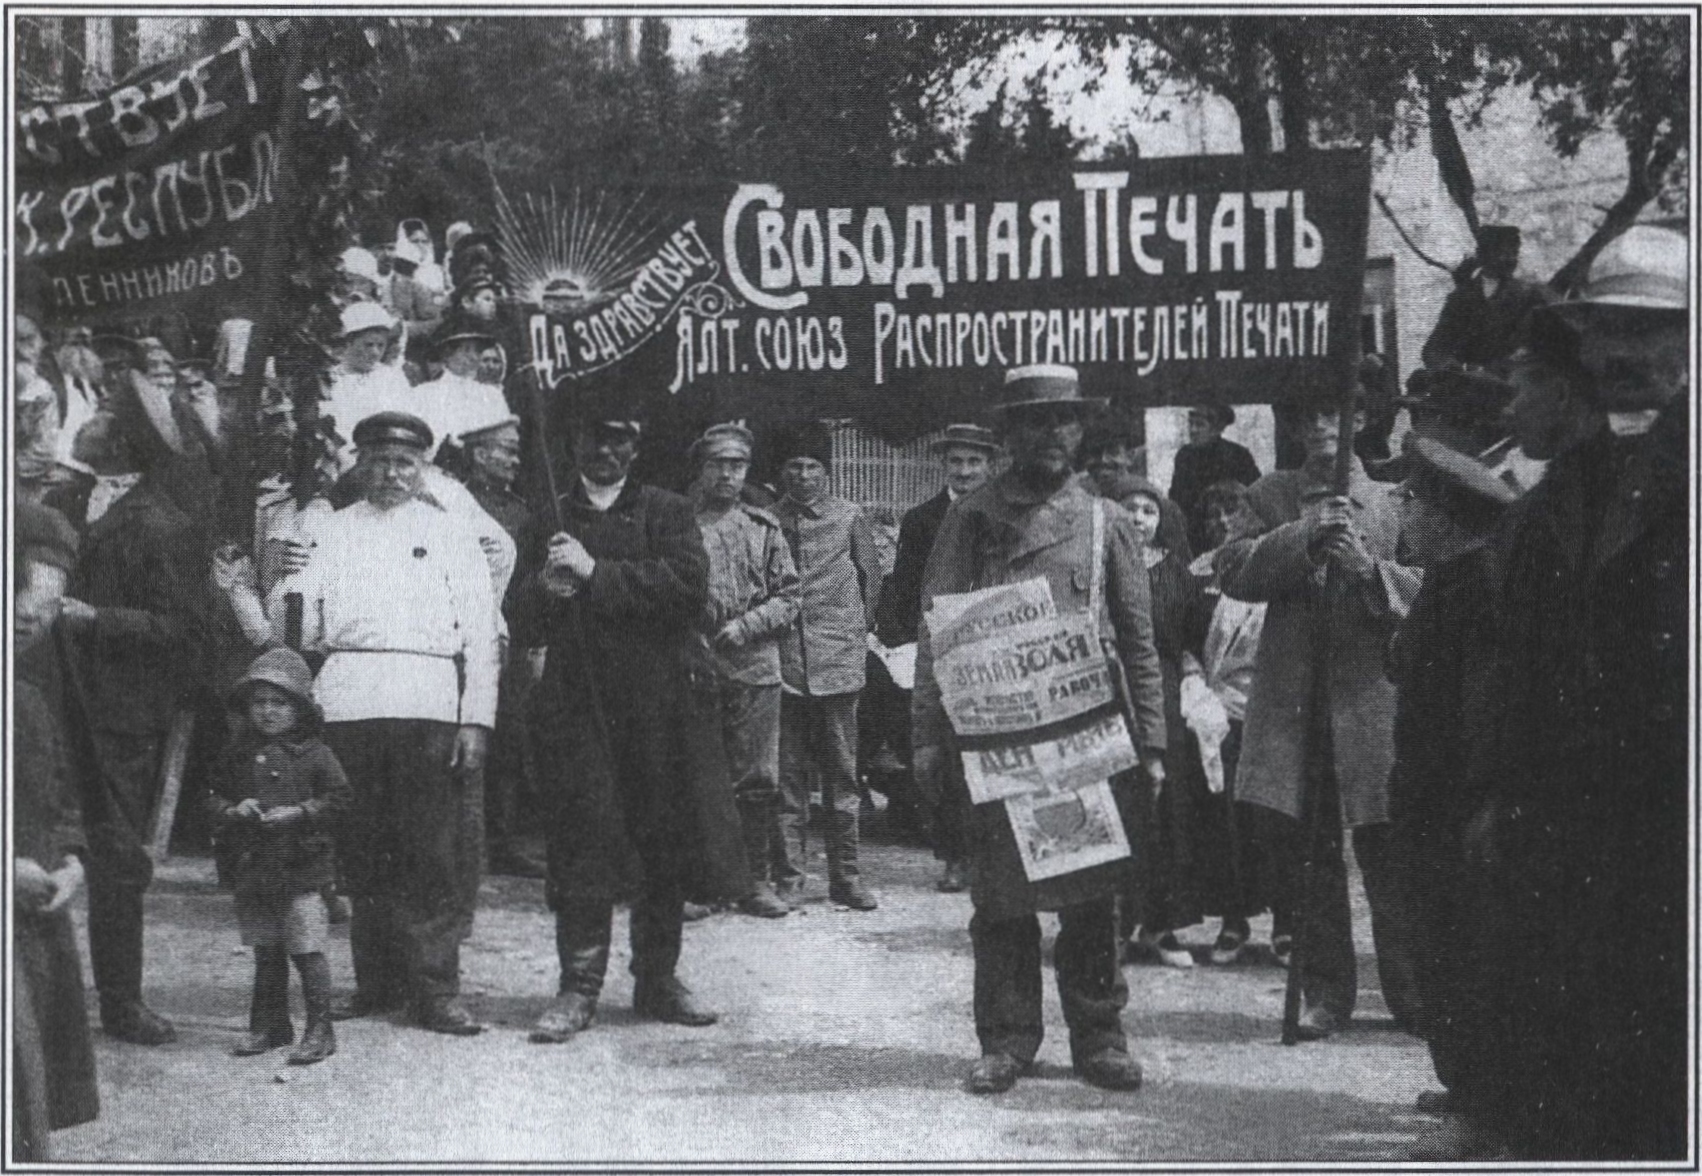 Демонстрация Ялтинского союза распространителей печати и союза рабочих извозопромышленников у гостиницы «Джалита». 1917 г.